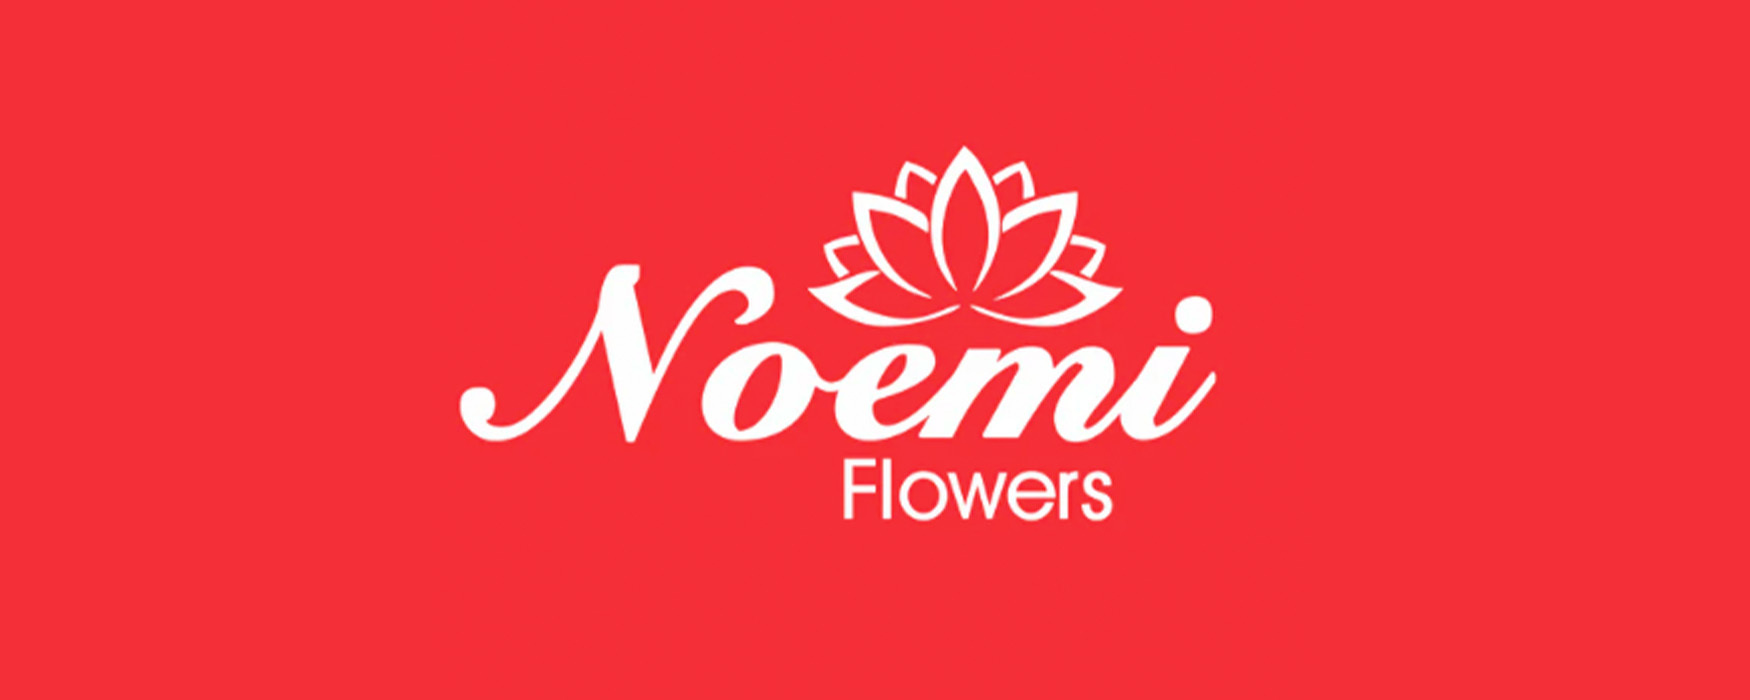 Floristeria Noemi Flowers